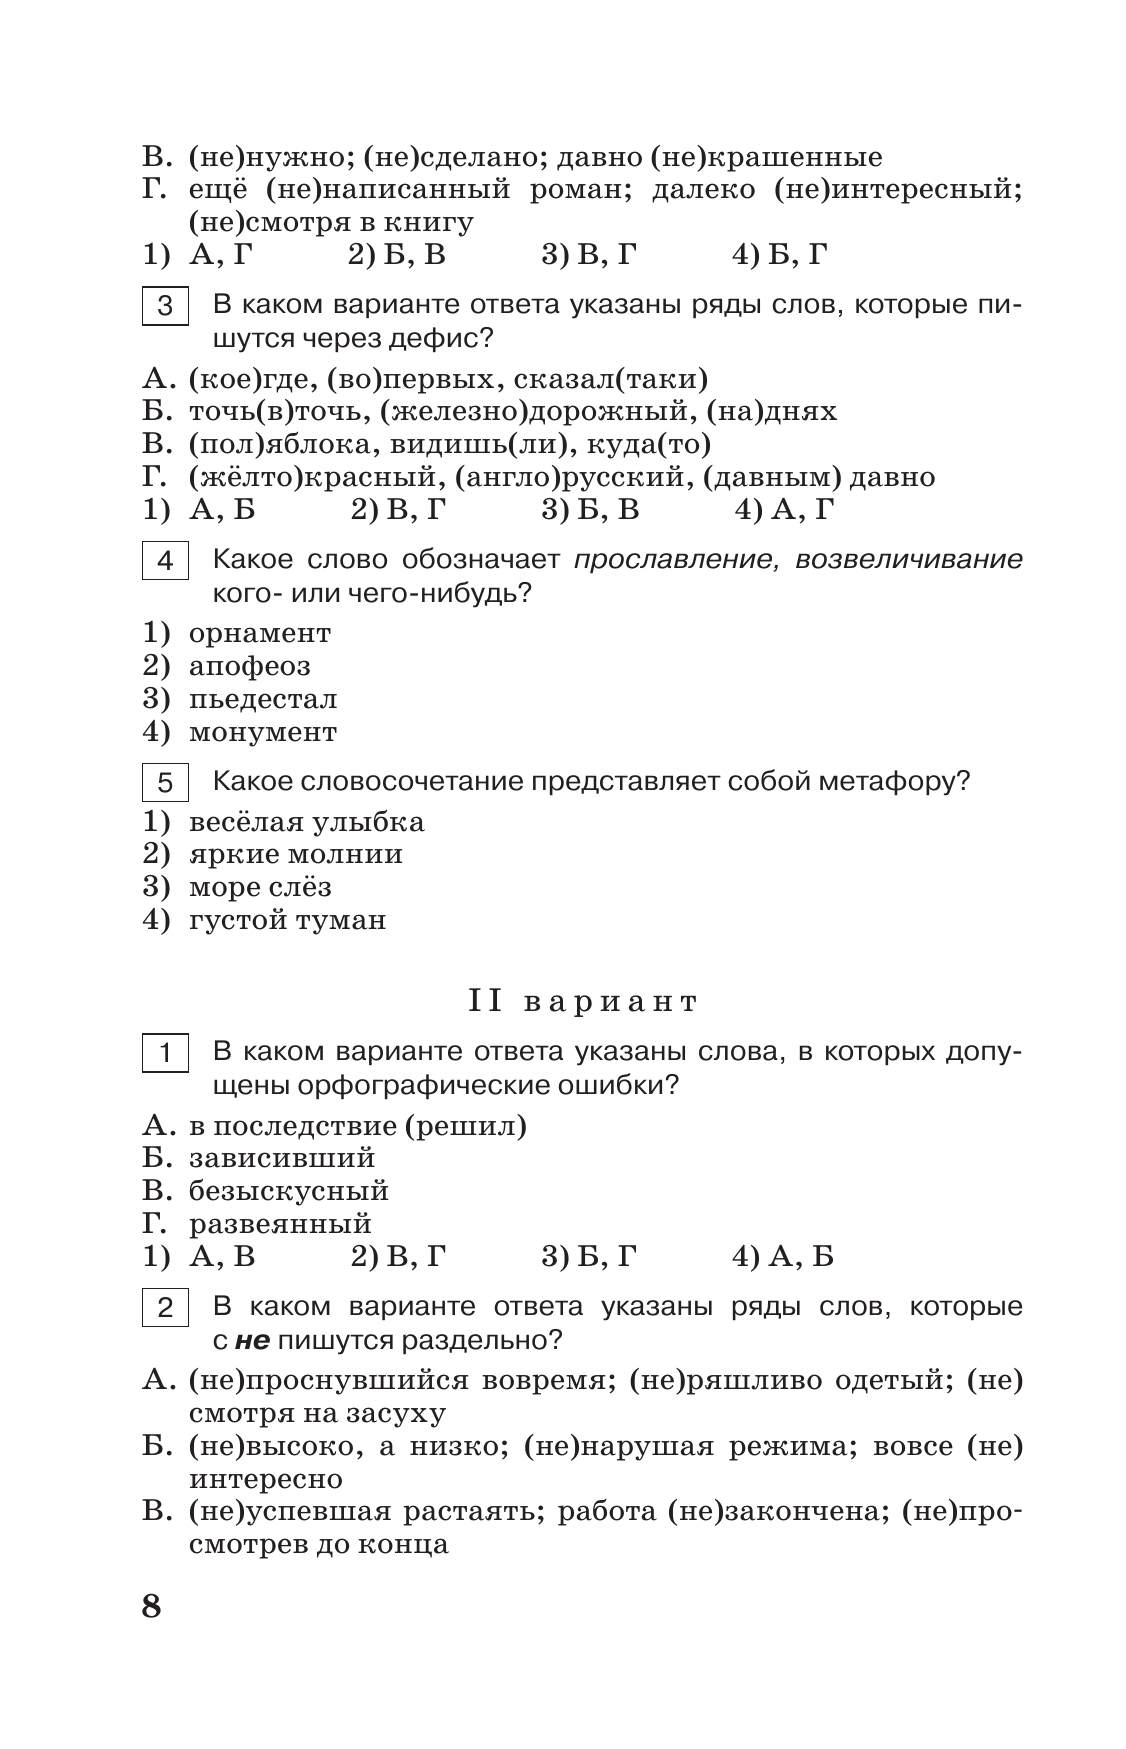 Тестовые задания по русскому языку. 8 класс. 9